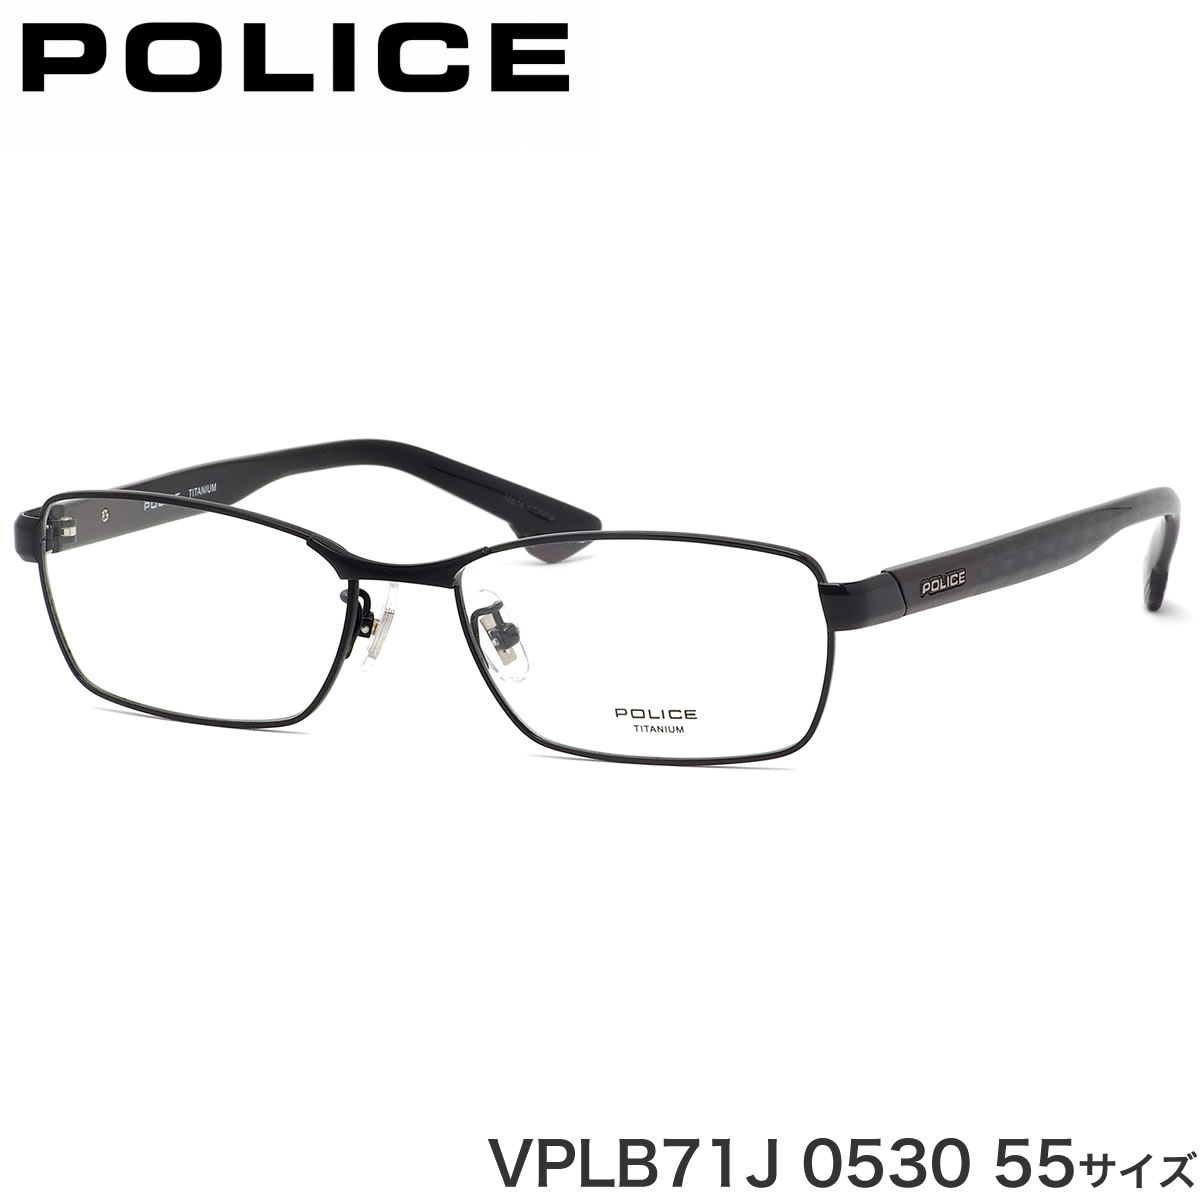 ポリス POLICE メガネ VPLB71J 0530 55サイズ チタニウム コンビネーション ストライプカーボンパターン レッド ビジネス メンズ レディース